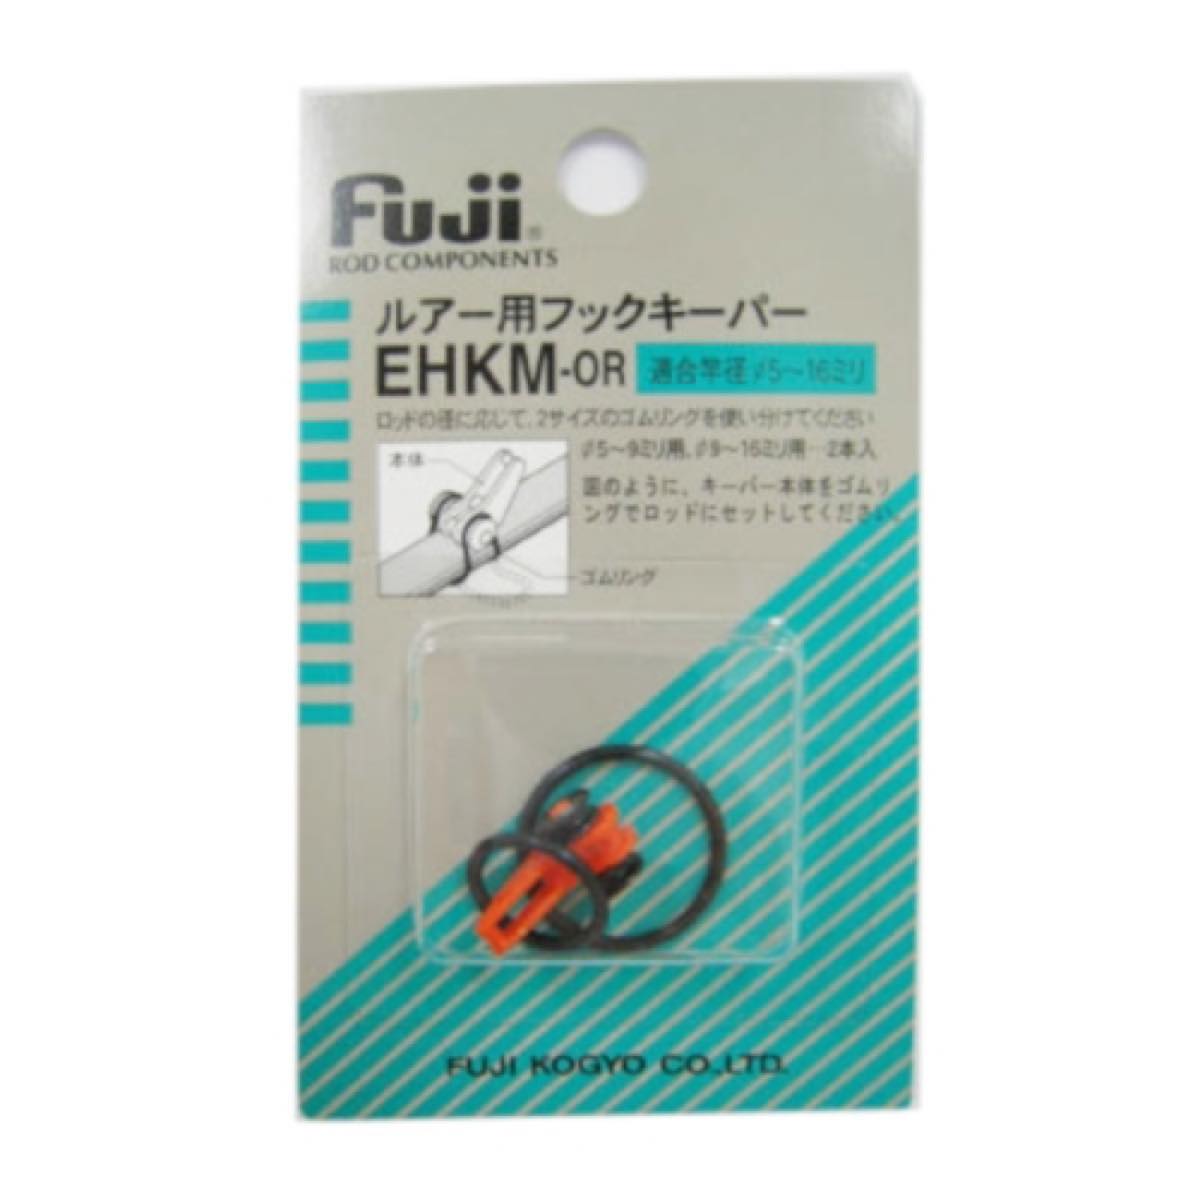 富士工業(FUJI KOGYO) ルアー用 フックキーパー EHKM-OR オレンジ ネコポス(メール便)対象商品